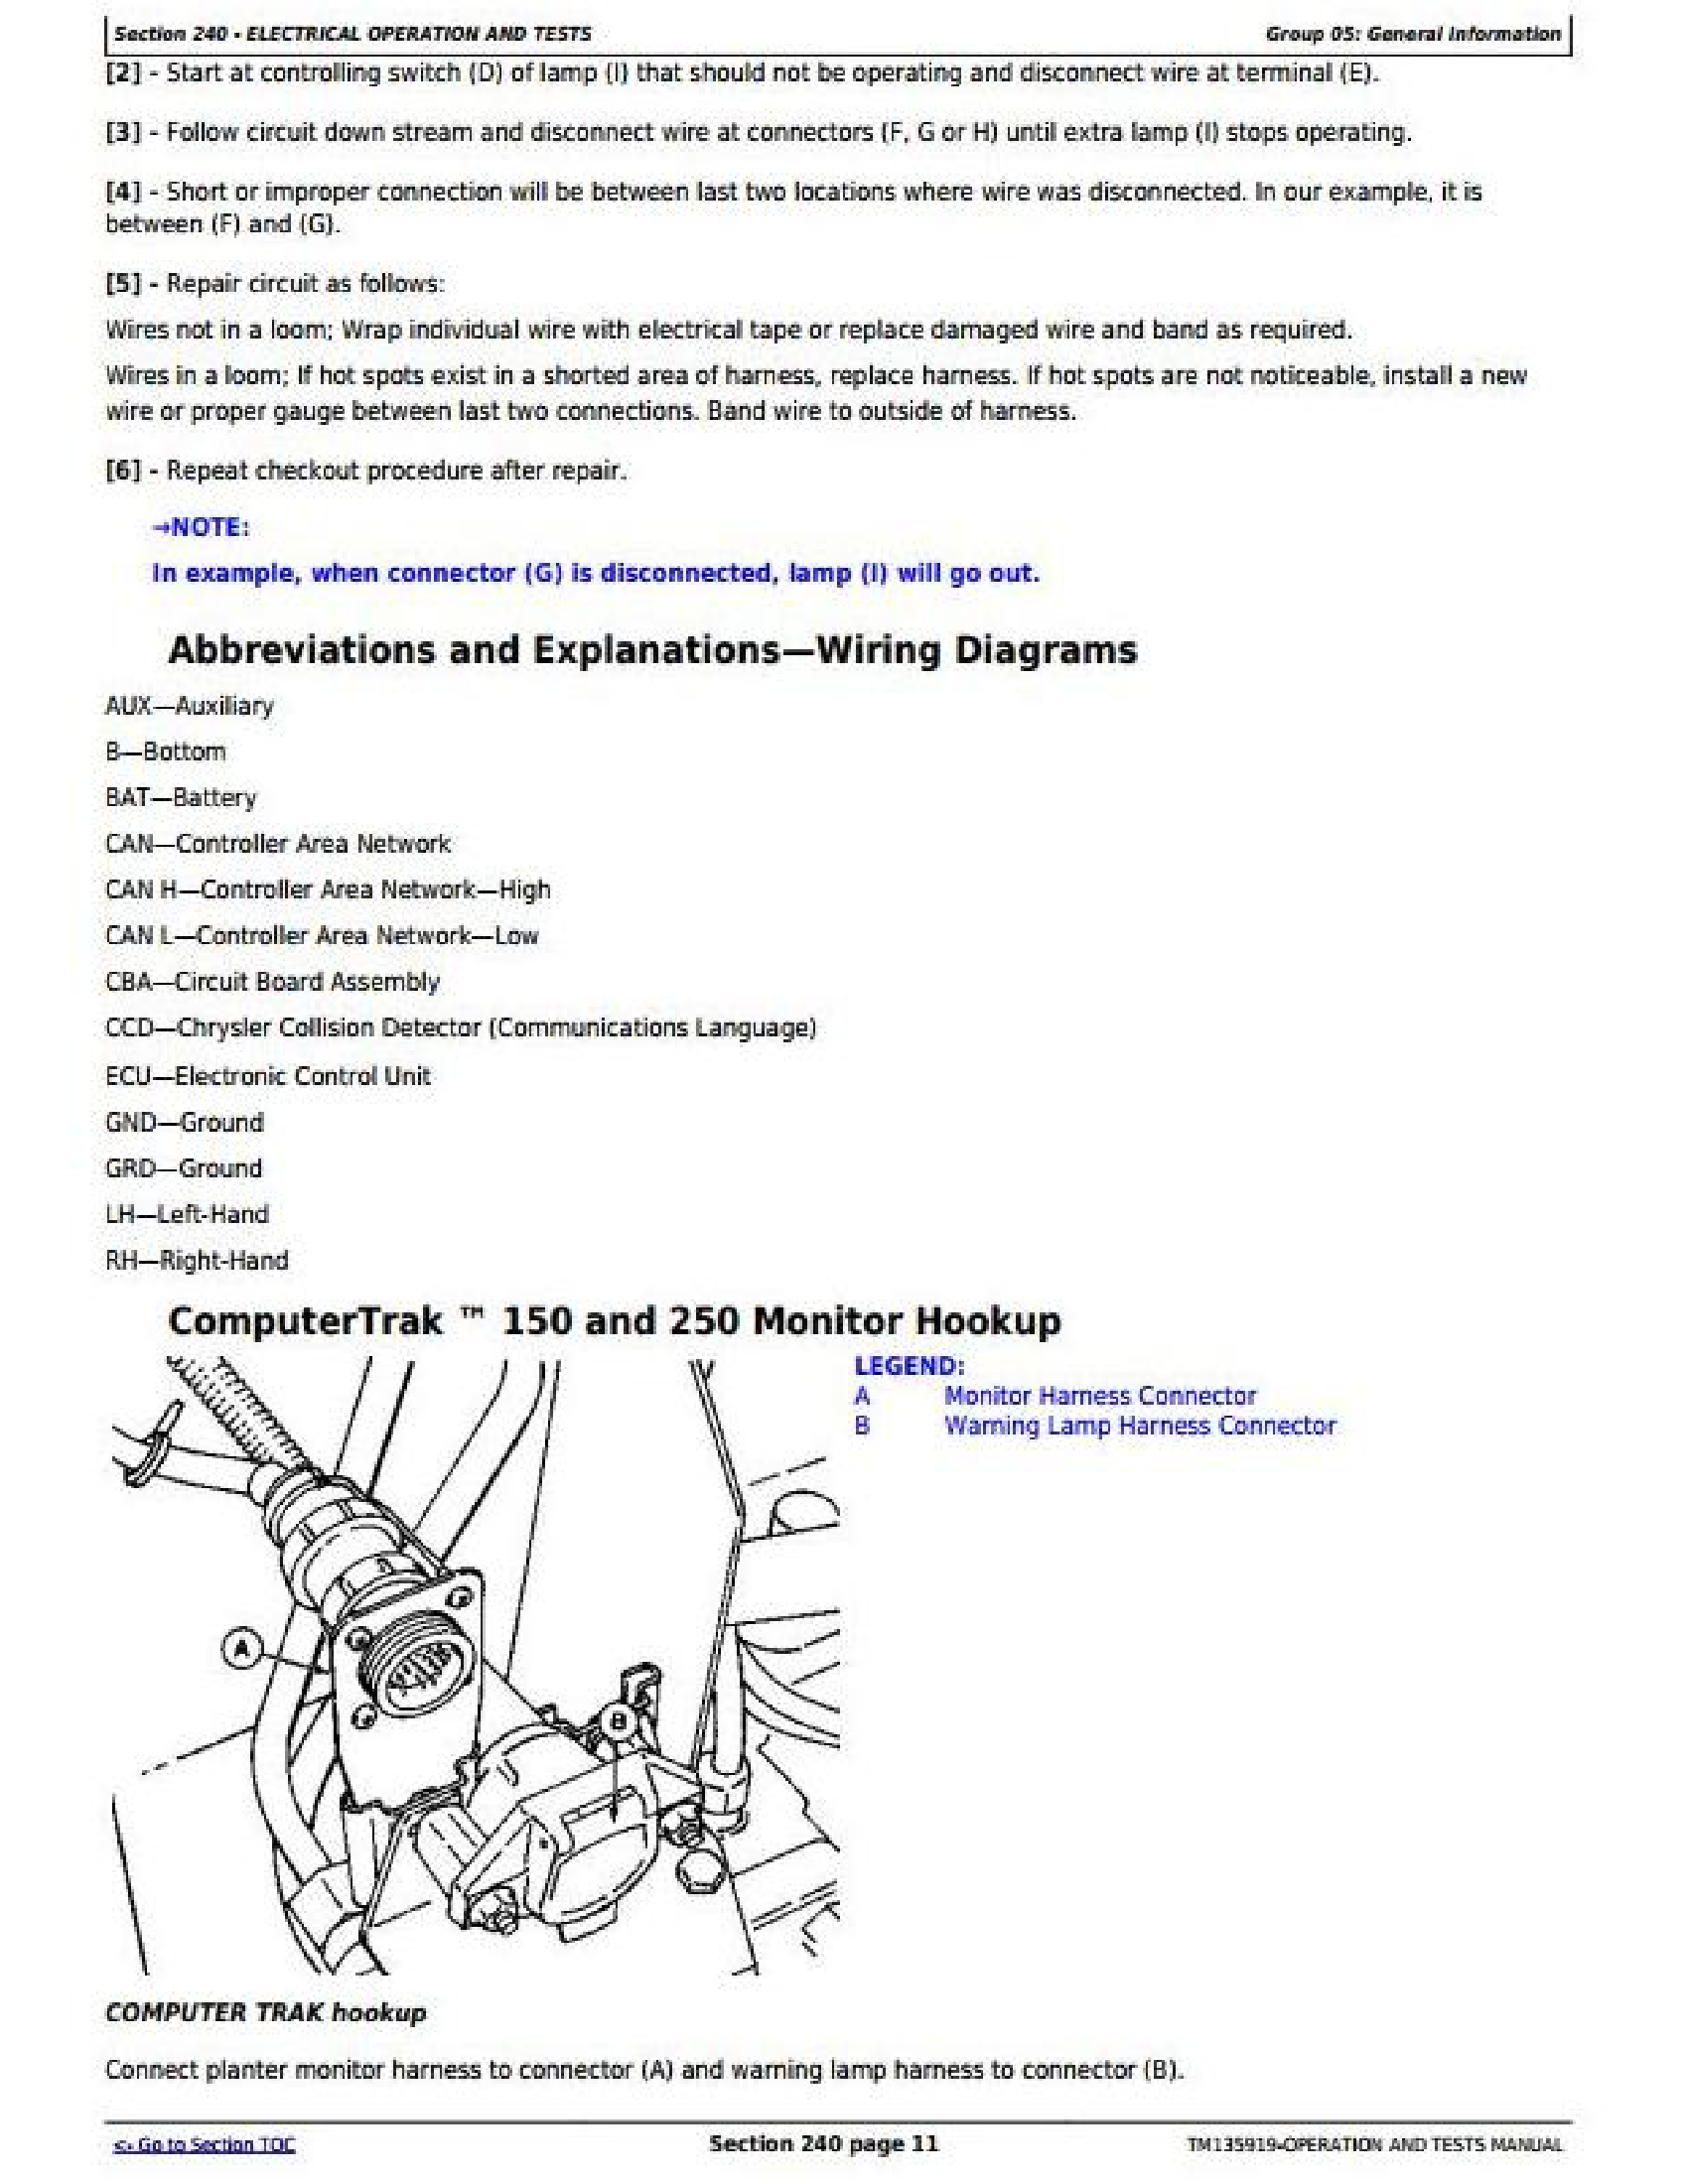 John Deere DB66 manual